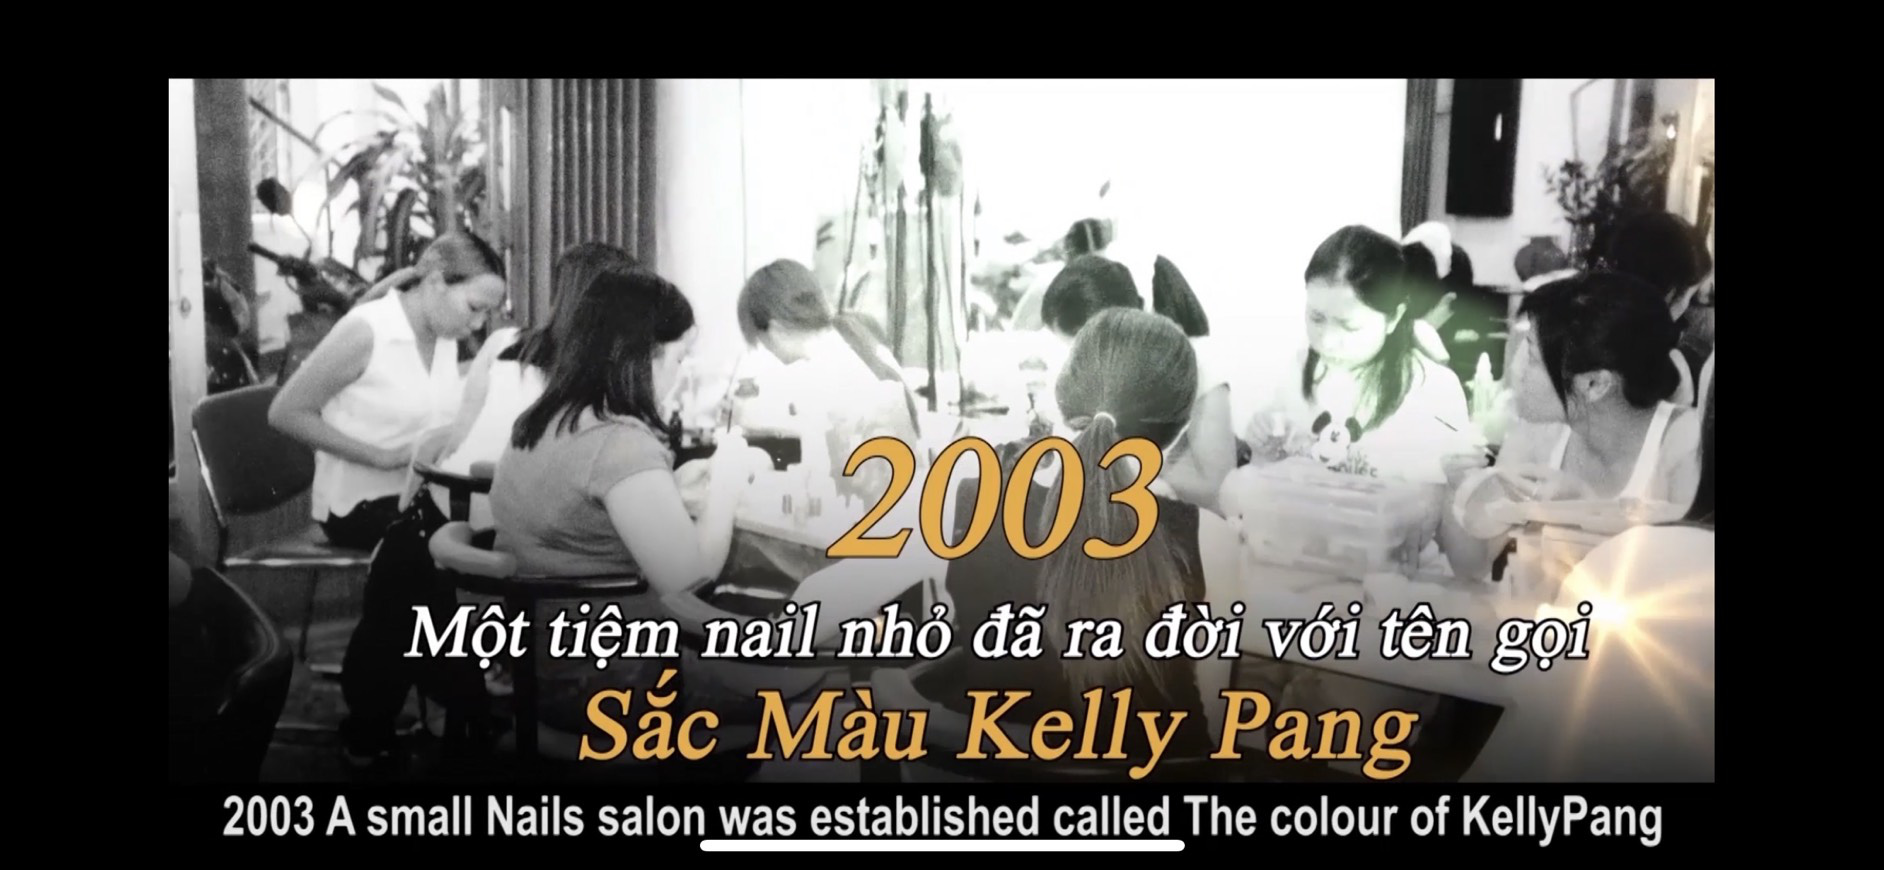 Câu chuyện thành công của Kelly Pang truyền cảm hứng với những ai muốn khởi nghiệp với nghề nails - Ảnh 2.